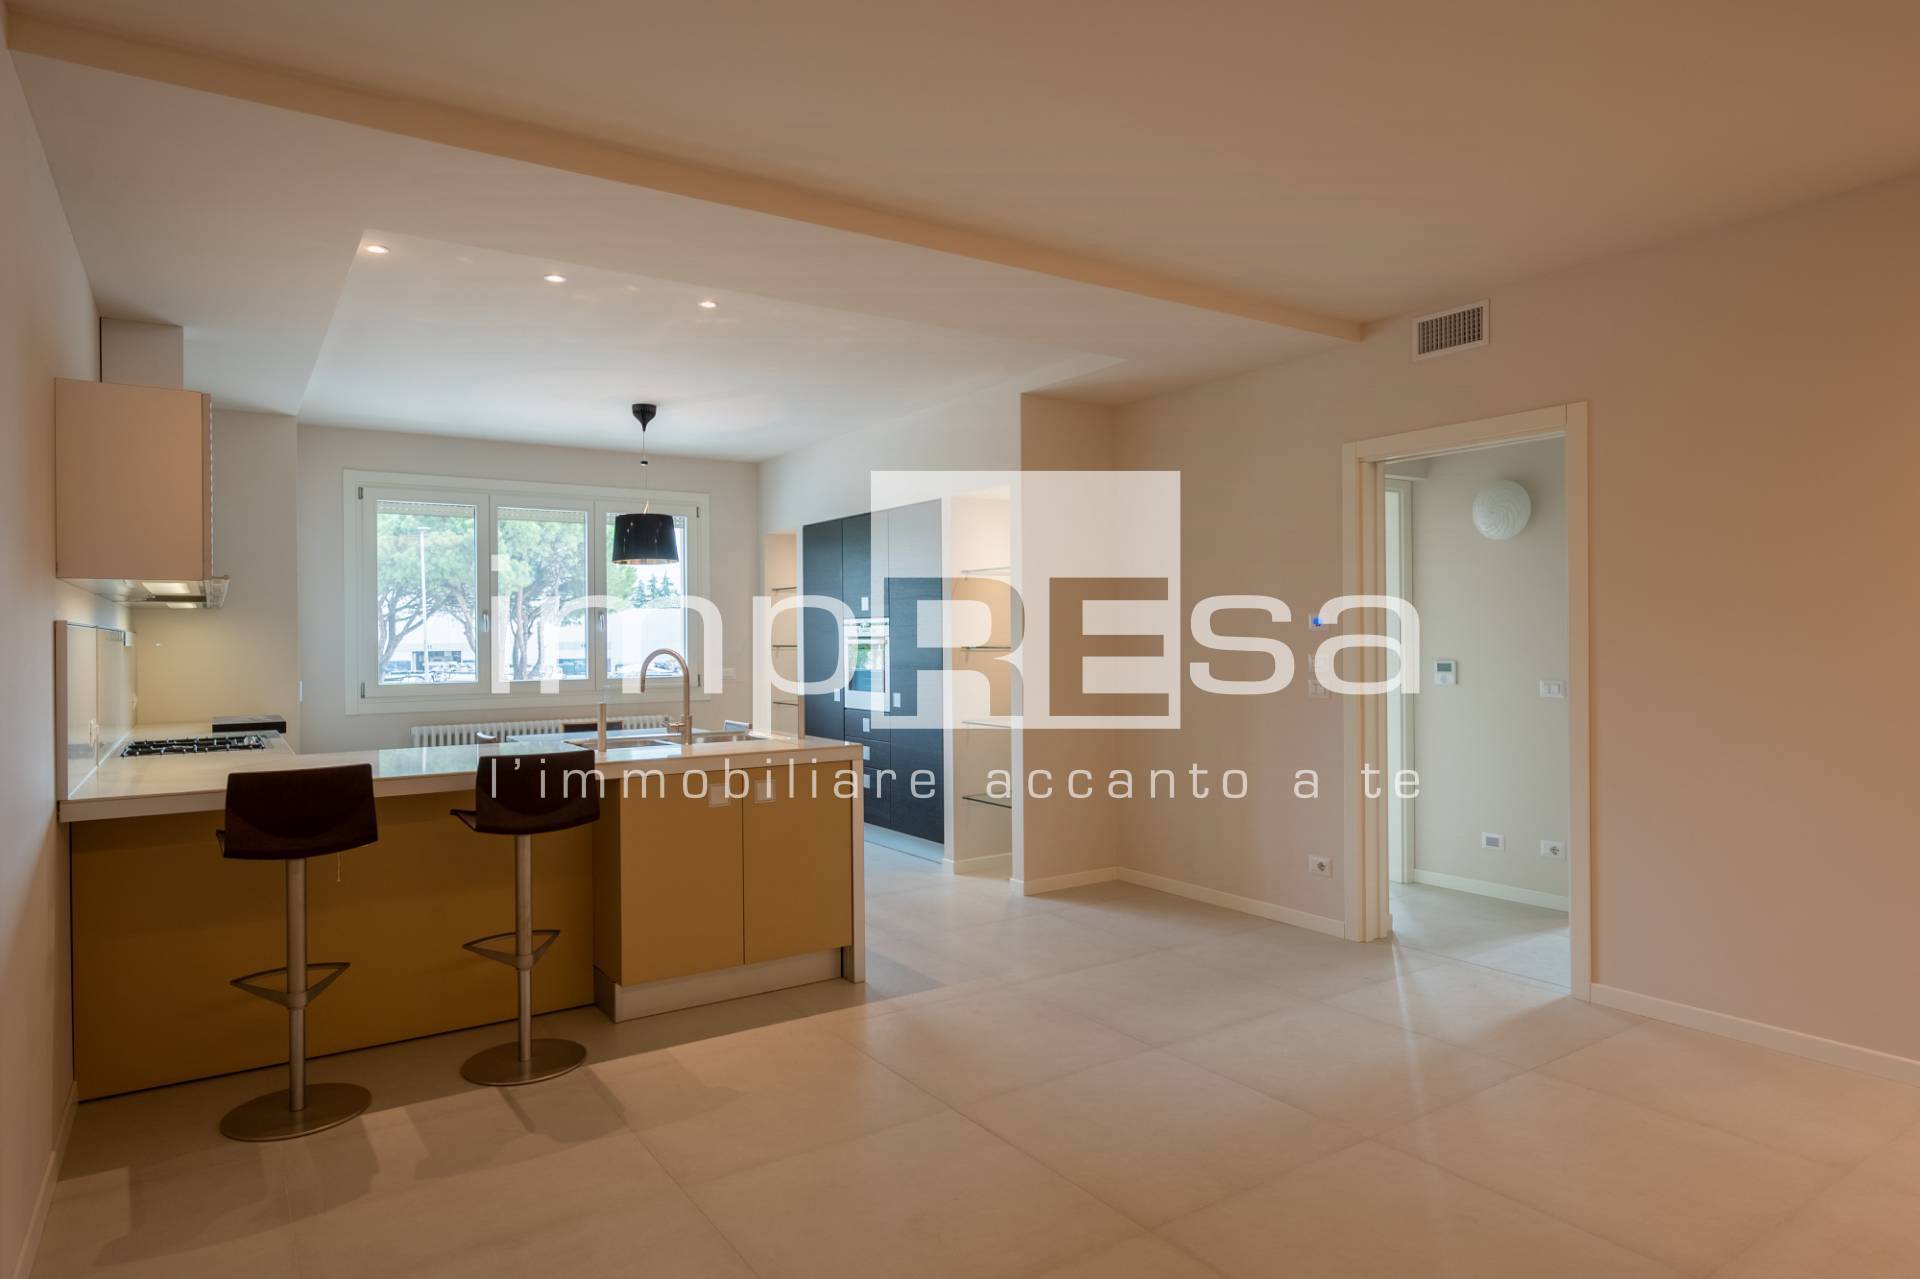 Appartamento in vendita a Gaiarine, 3 locali, prezzo € 185.000 | PortaleAgenzieImmobiliari.it